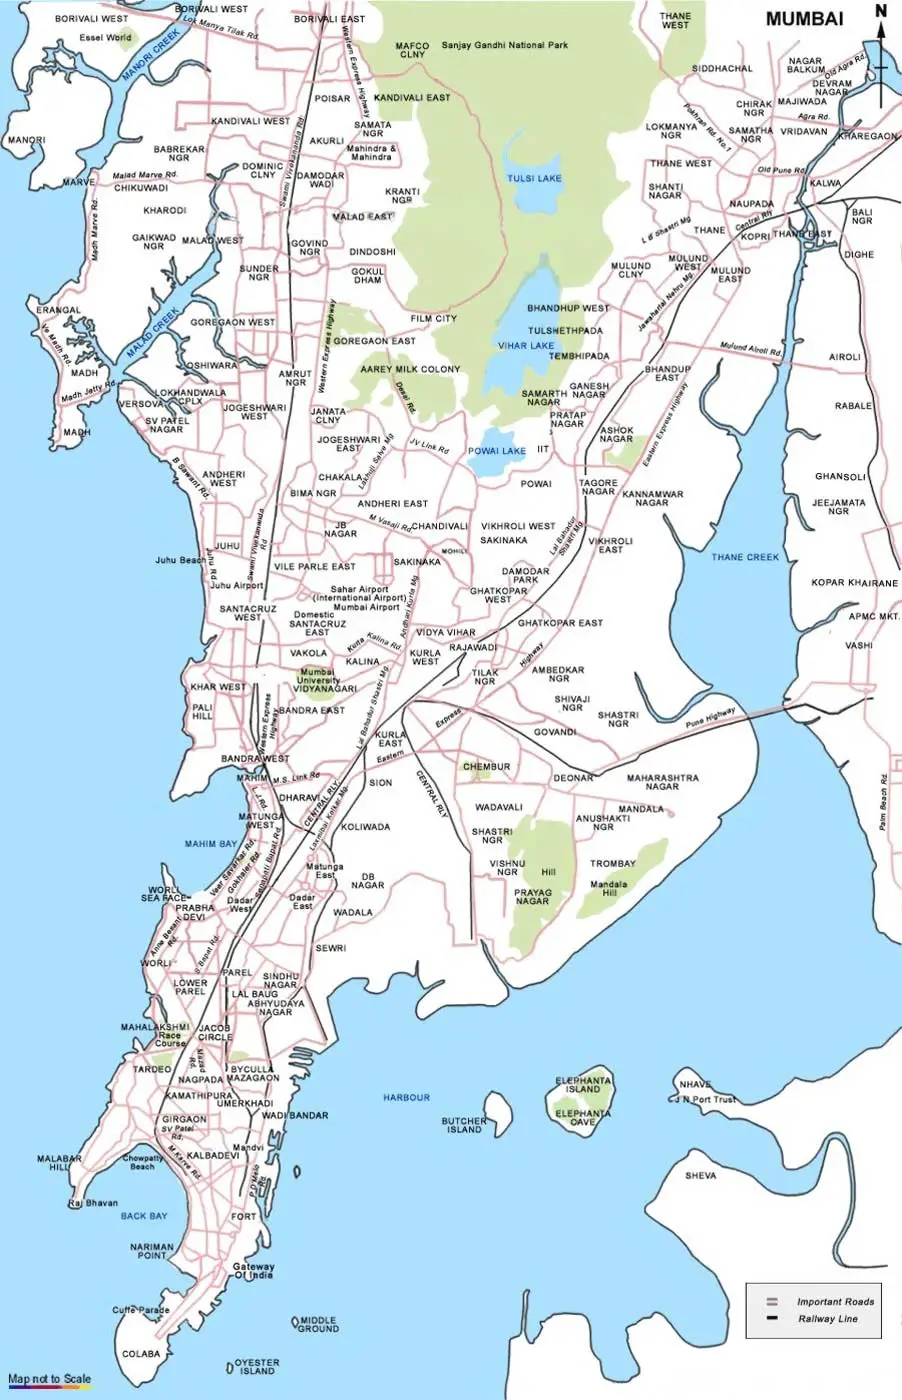 City Map of Mumbai